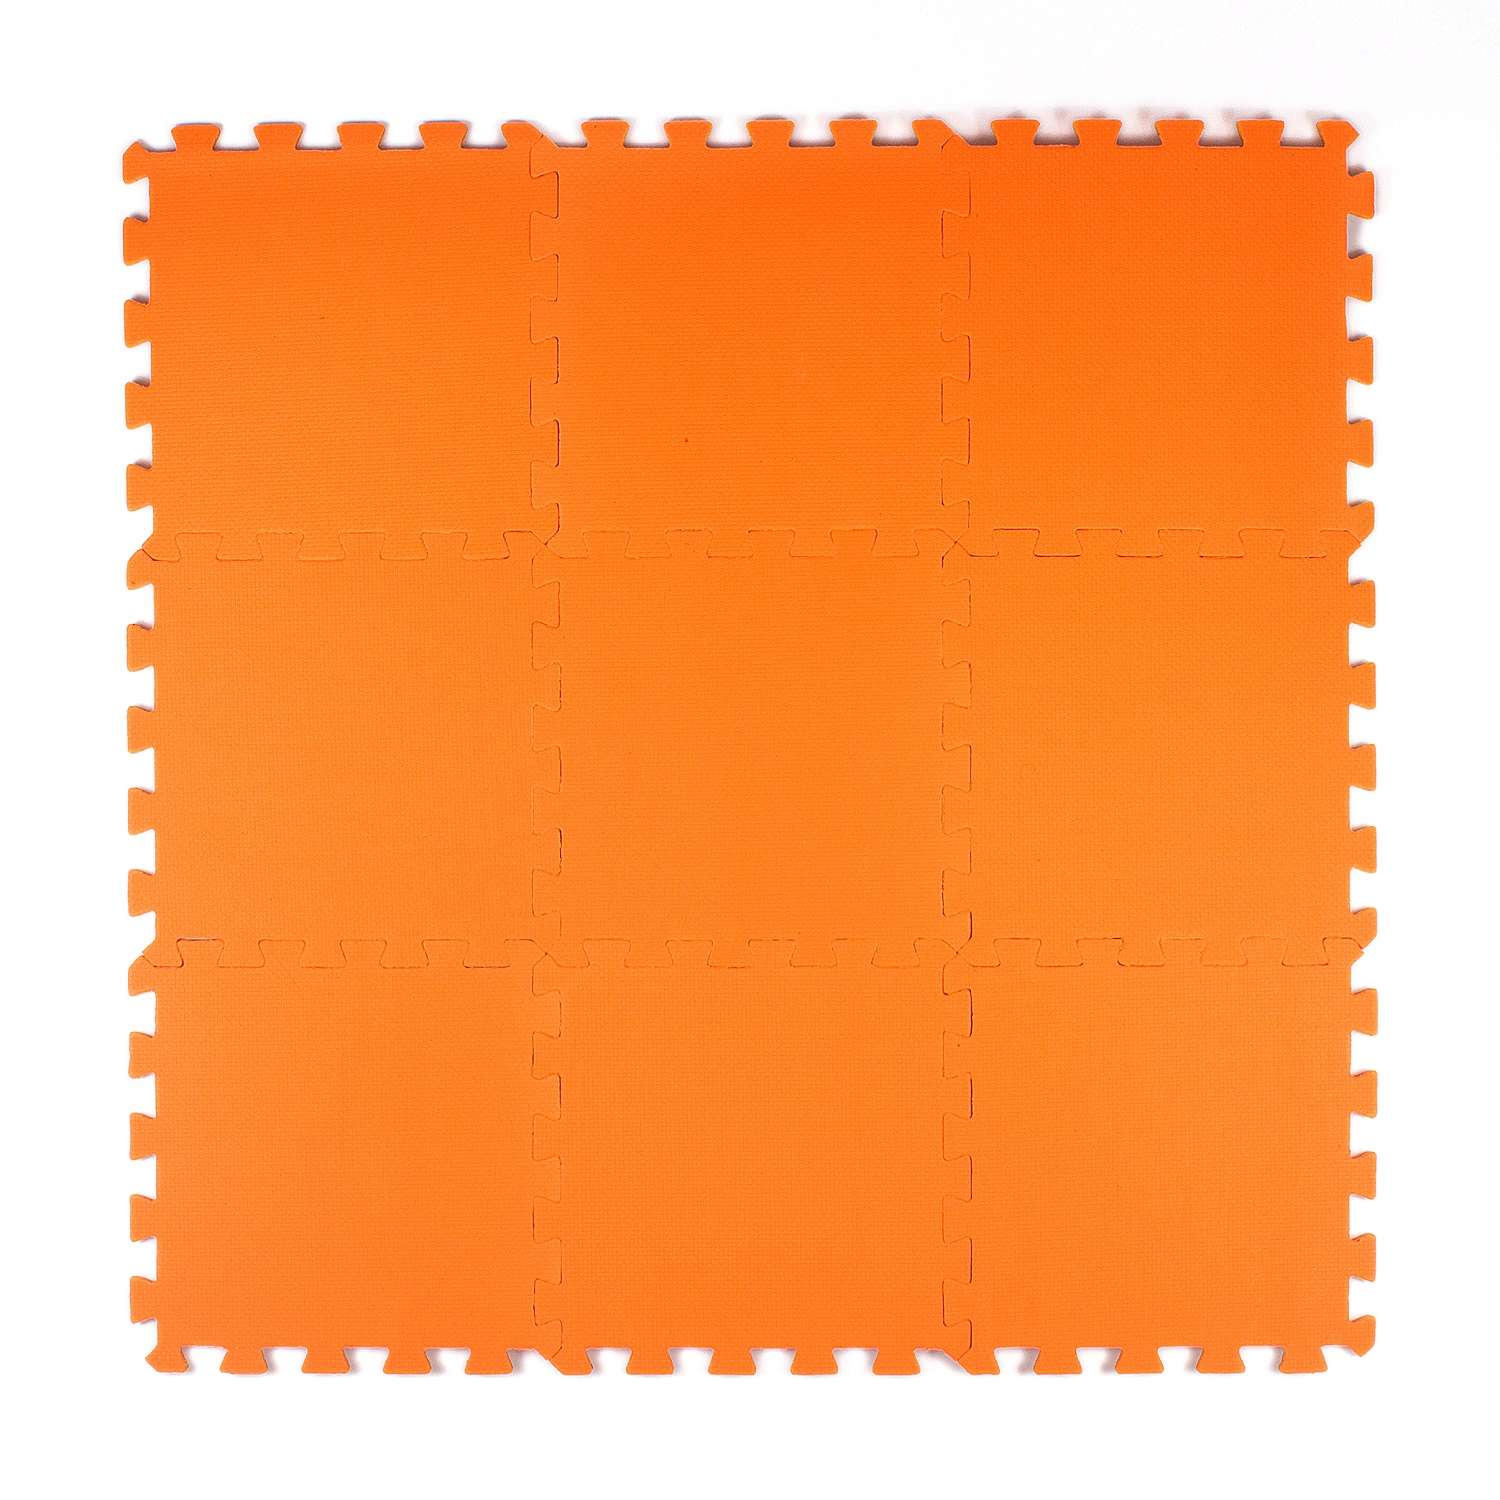 Развивающий детский коврик Eco cover игровой мягкий пол для ползания оранжевый 33х33 - фото 1